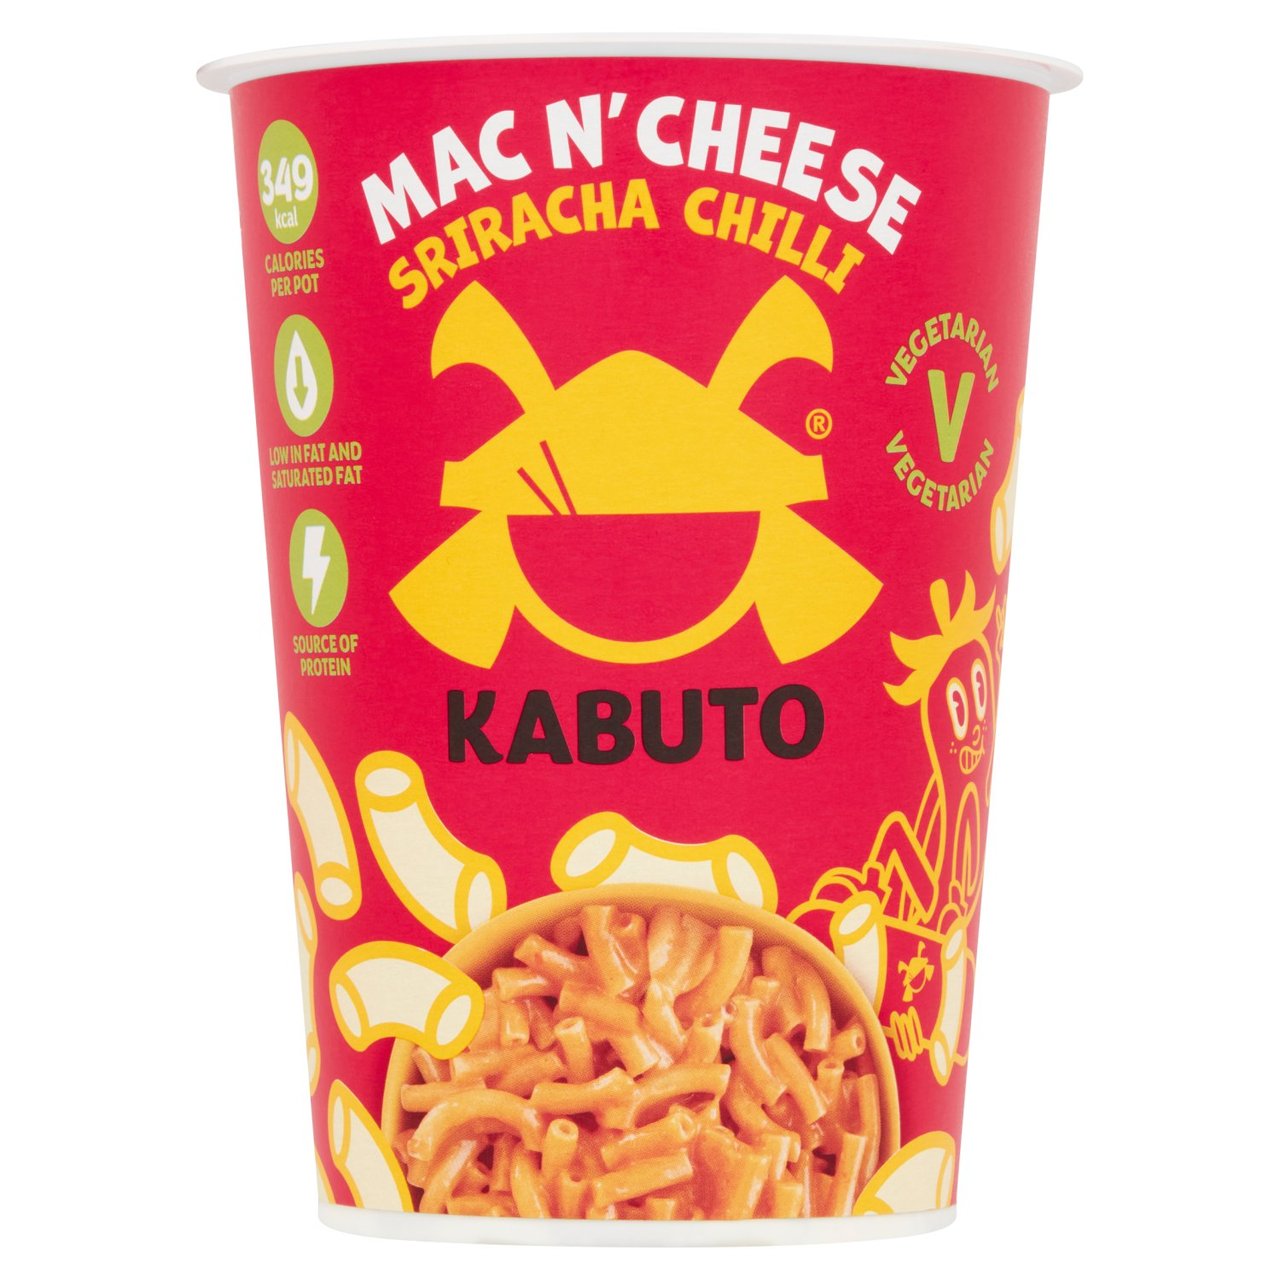 Kabuto Mac N Cheese Sriracha Chilli 85g @SaveCo Online Ltd